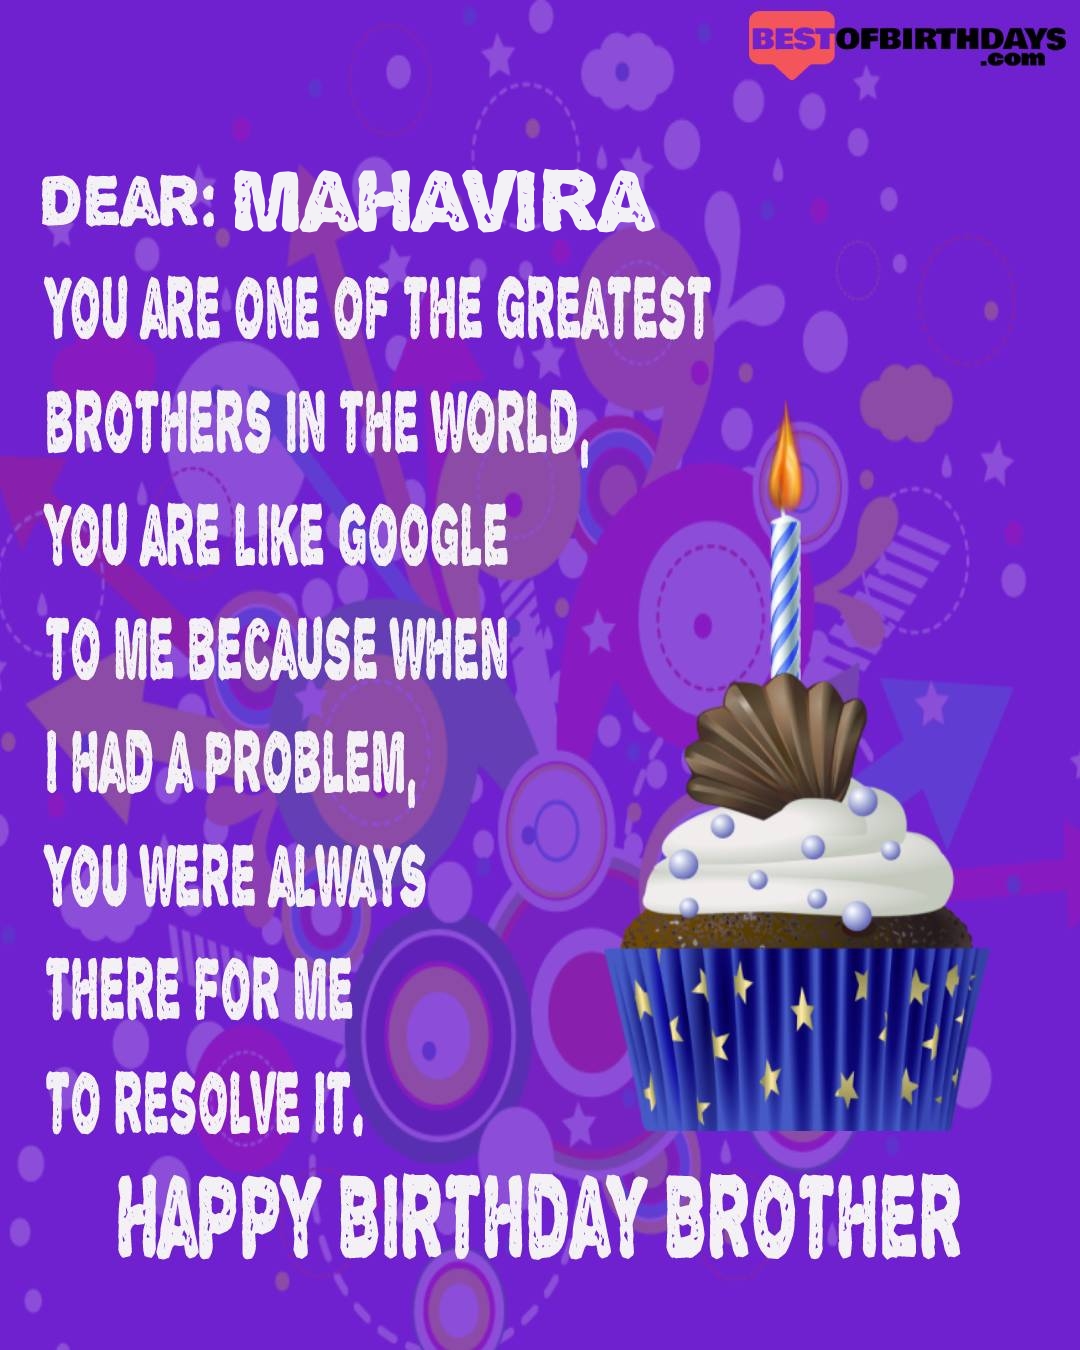 Happy birthday mahavira bhai brother bro